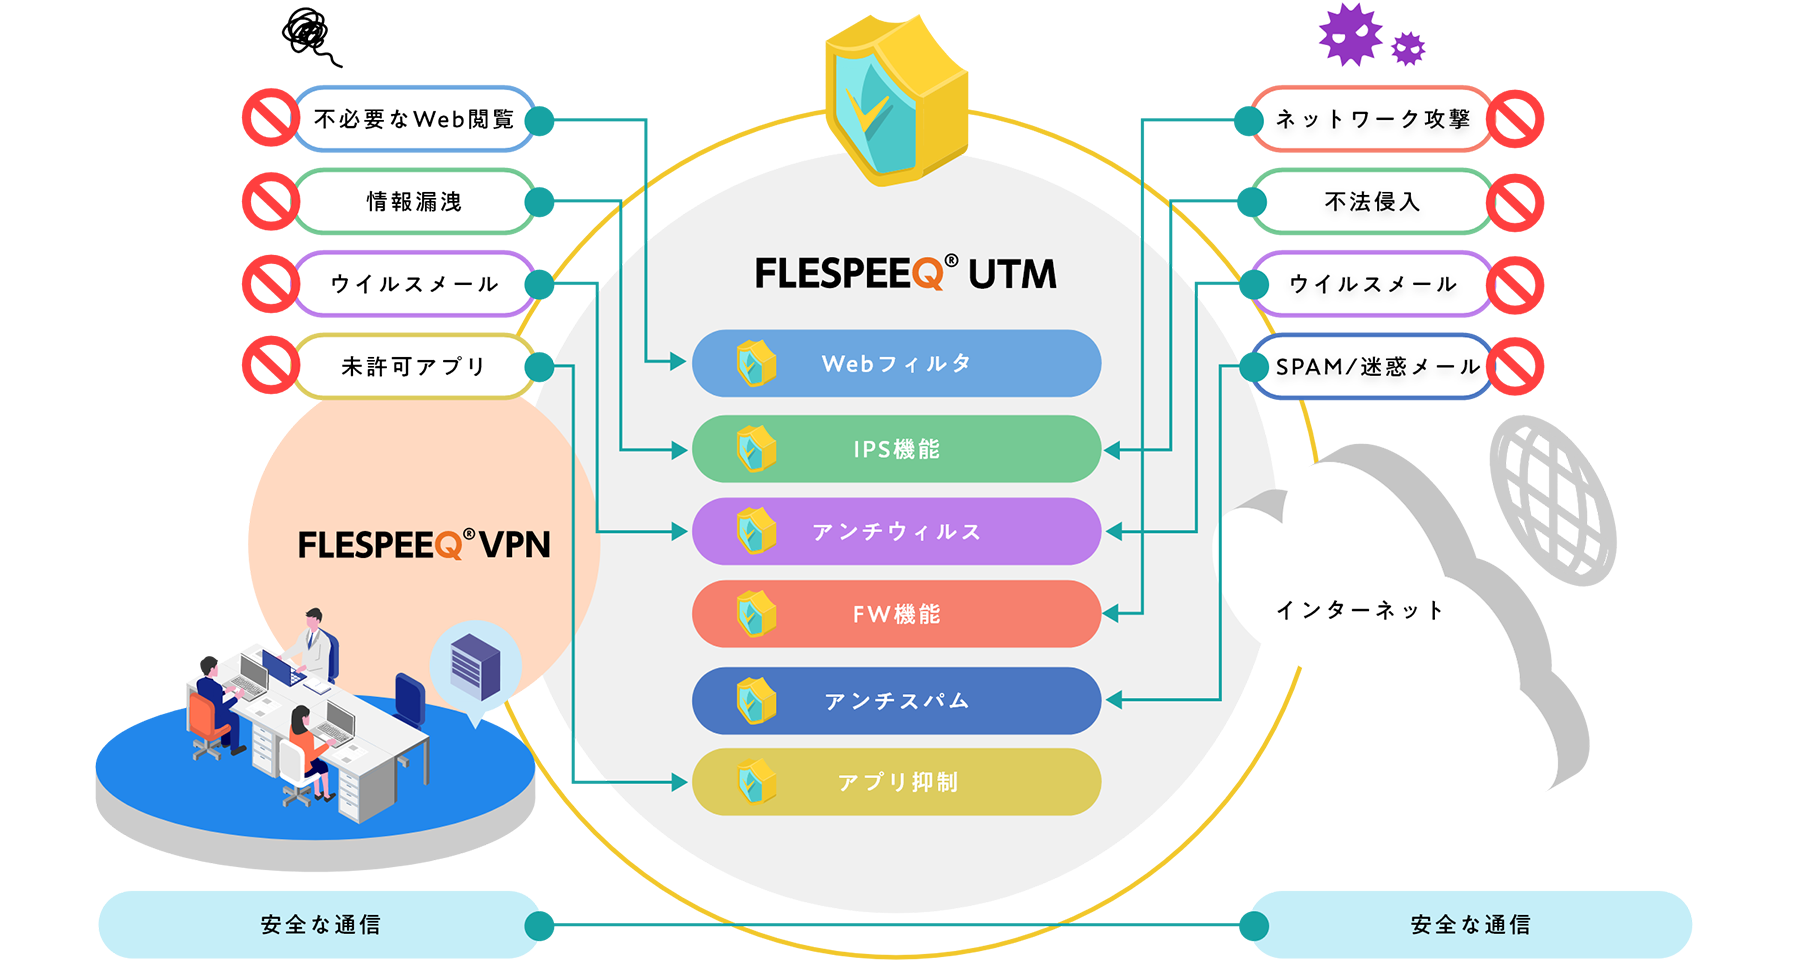 FLESPEEQ UTM(クラウド型)解説図